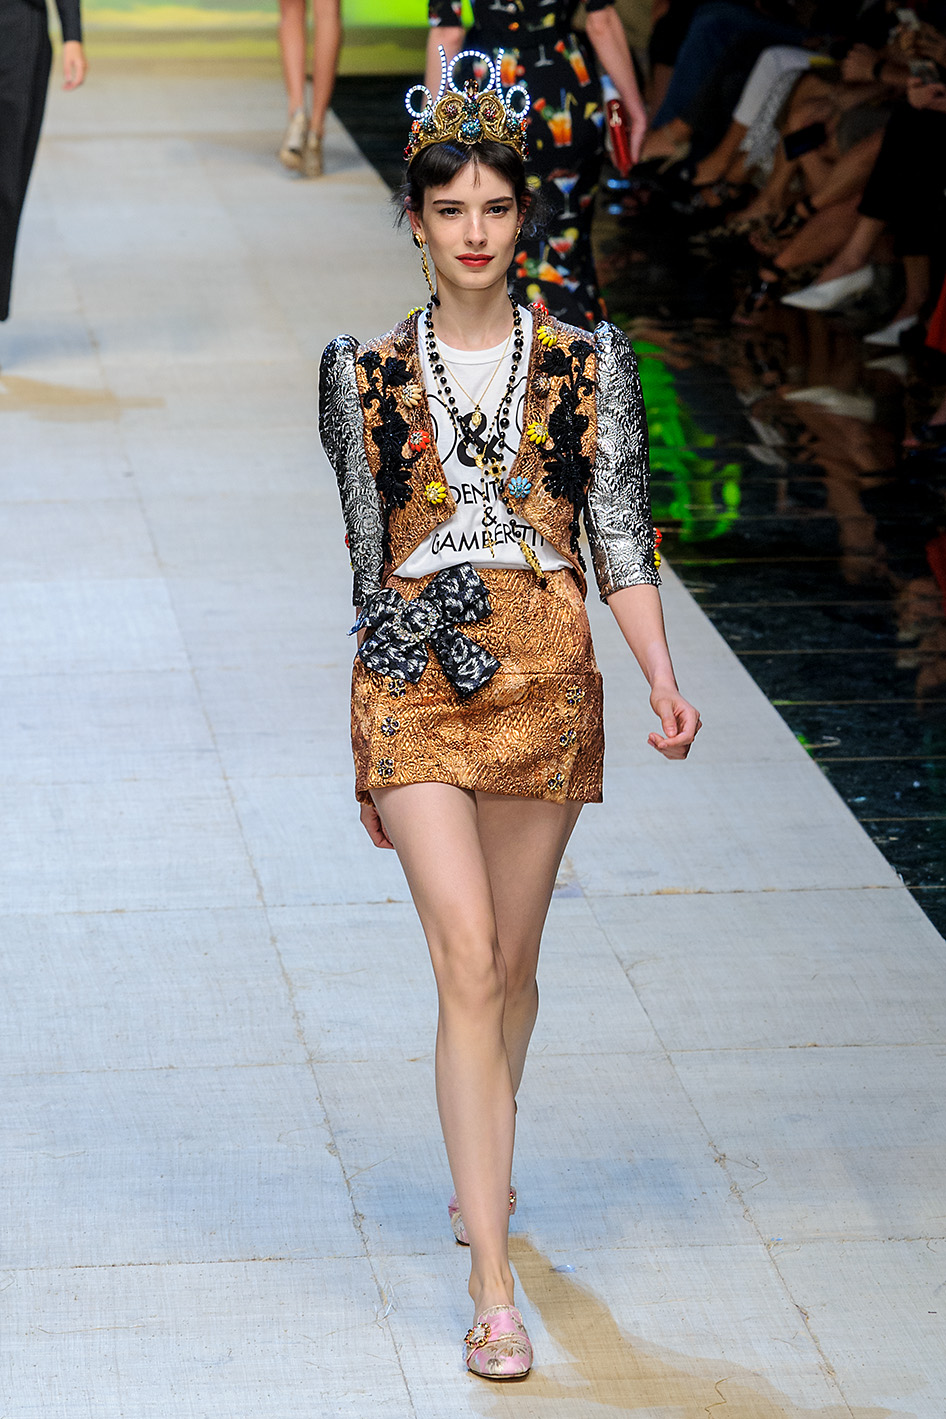 Milan Fashion Week SS17 
Dolce Gabbana show